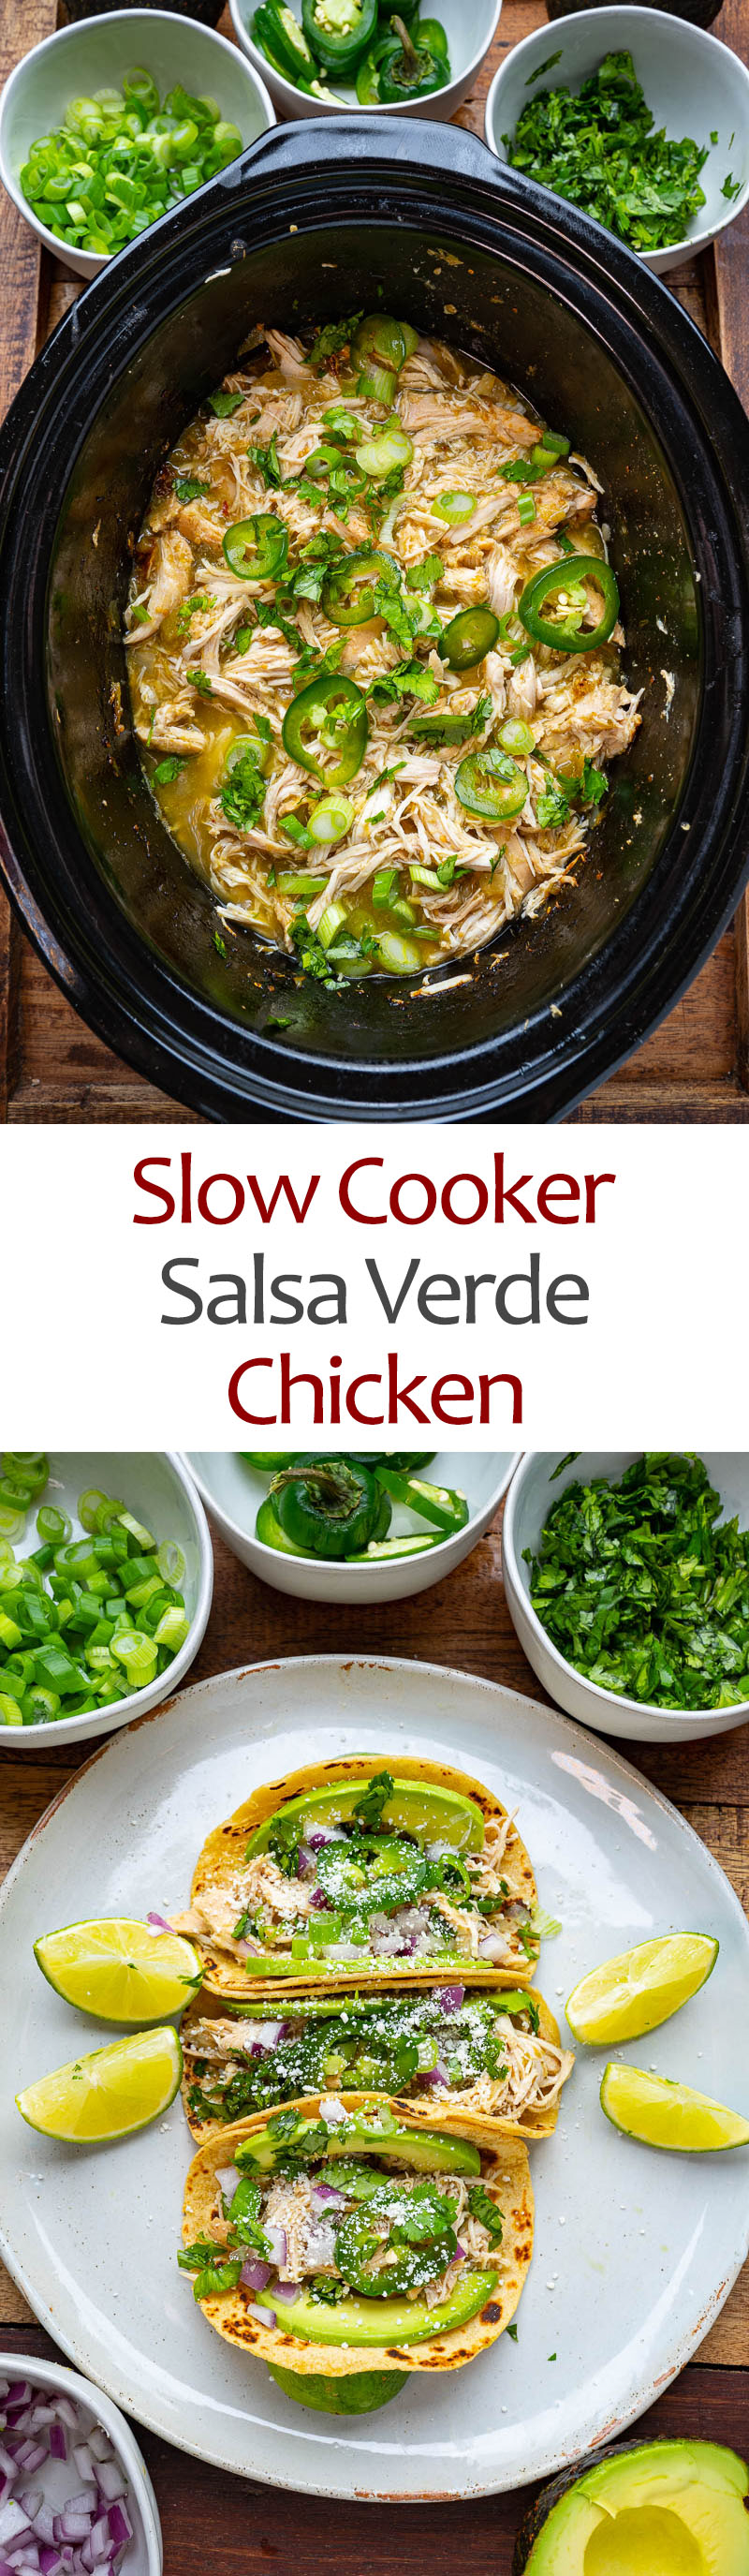 Slow Cooker Salsa Verde Chicken